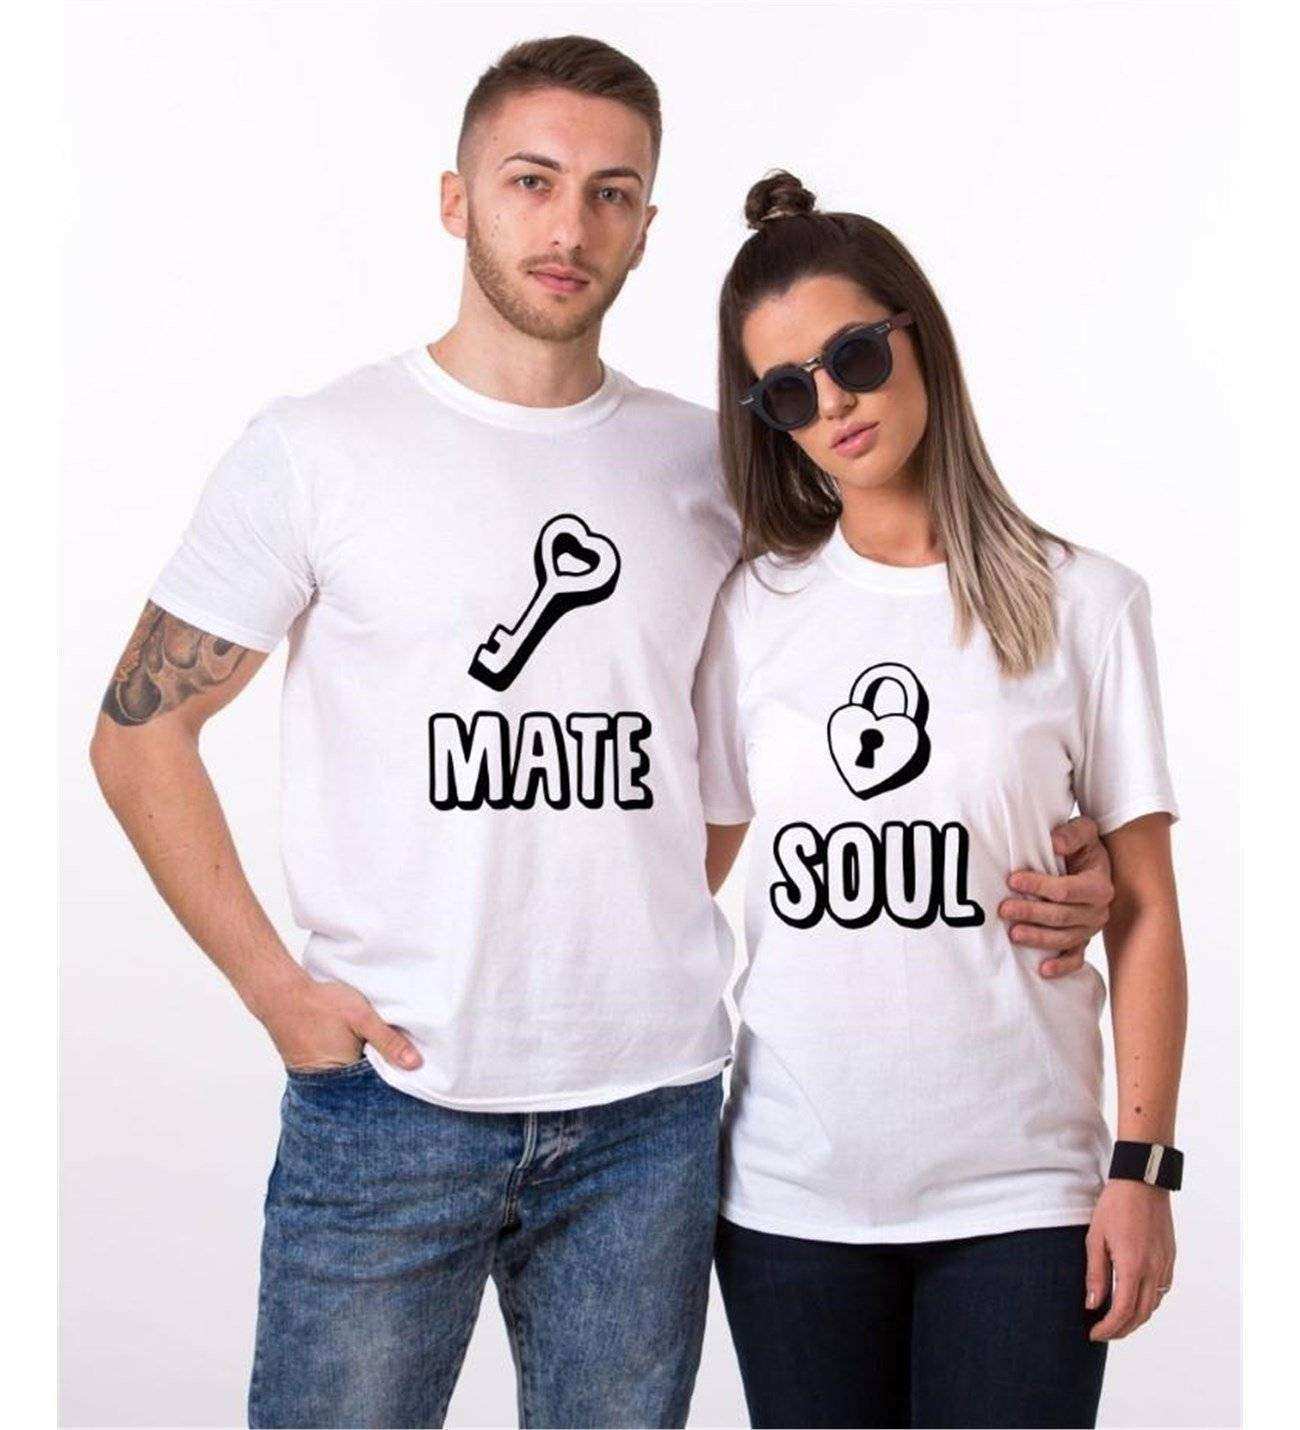 Tshirthane Soul Mate Anahtar Sevgili Kombinleri Tshirt Kombini